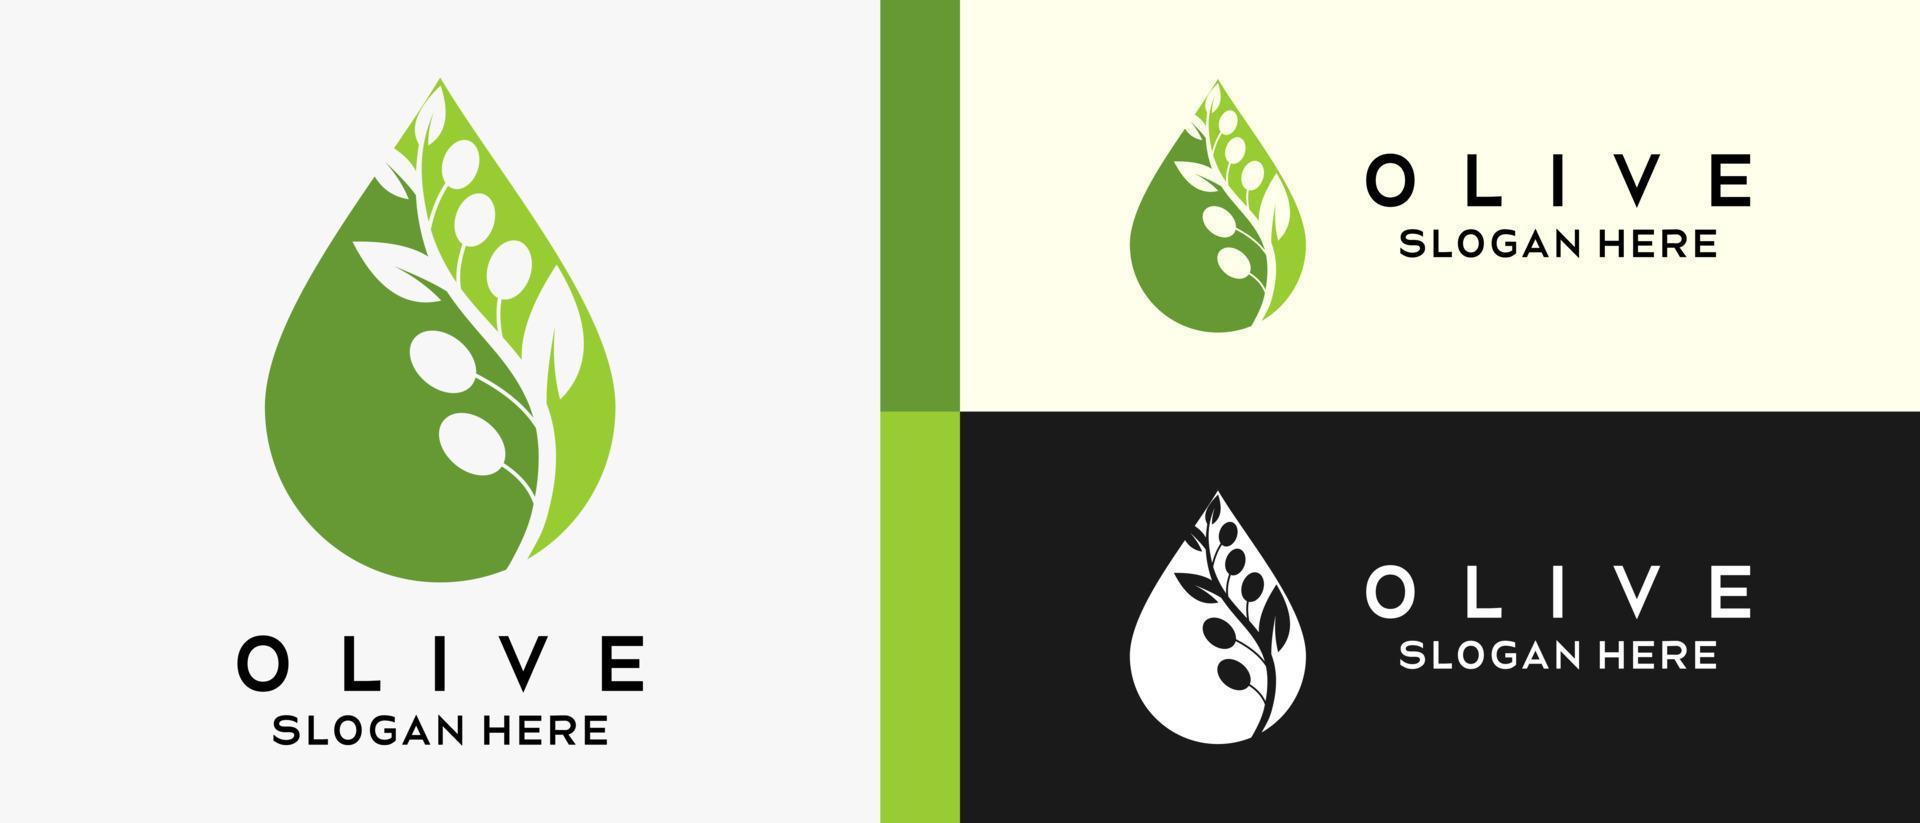 modelo de design de logotipo verde-oliva com conceito criativo em gotejamento. vetor de ilustração de logotipo de azeitona premium